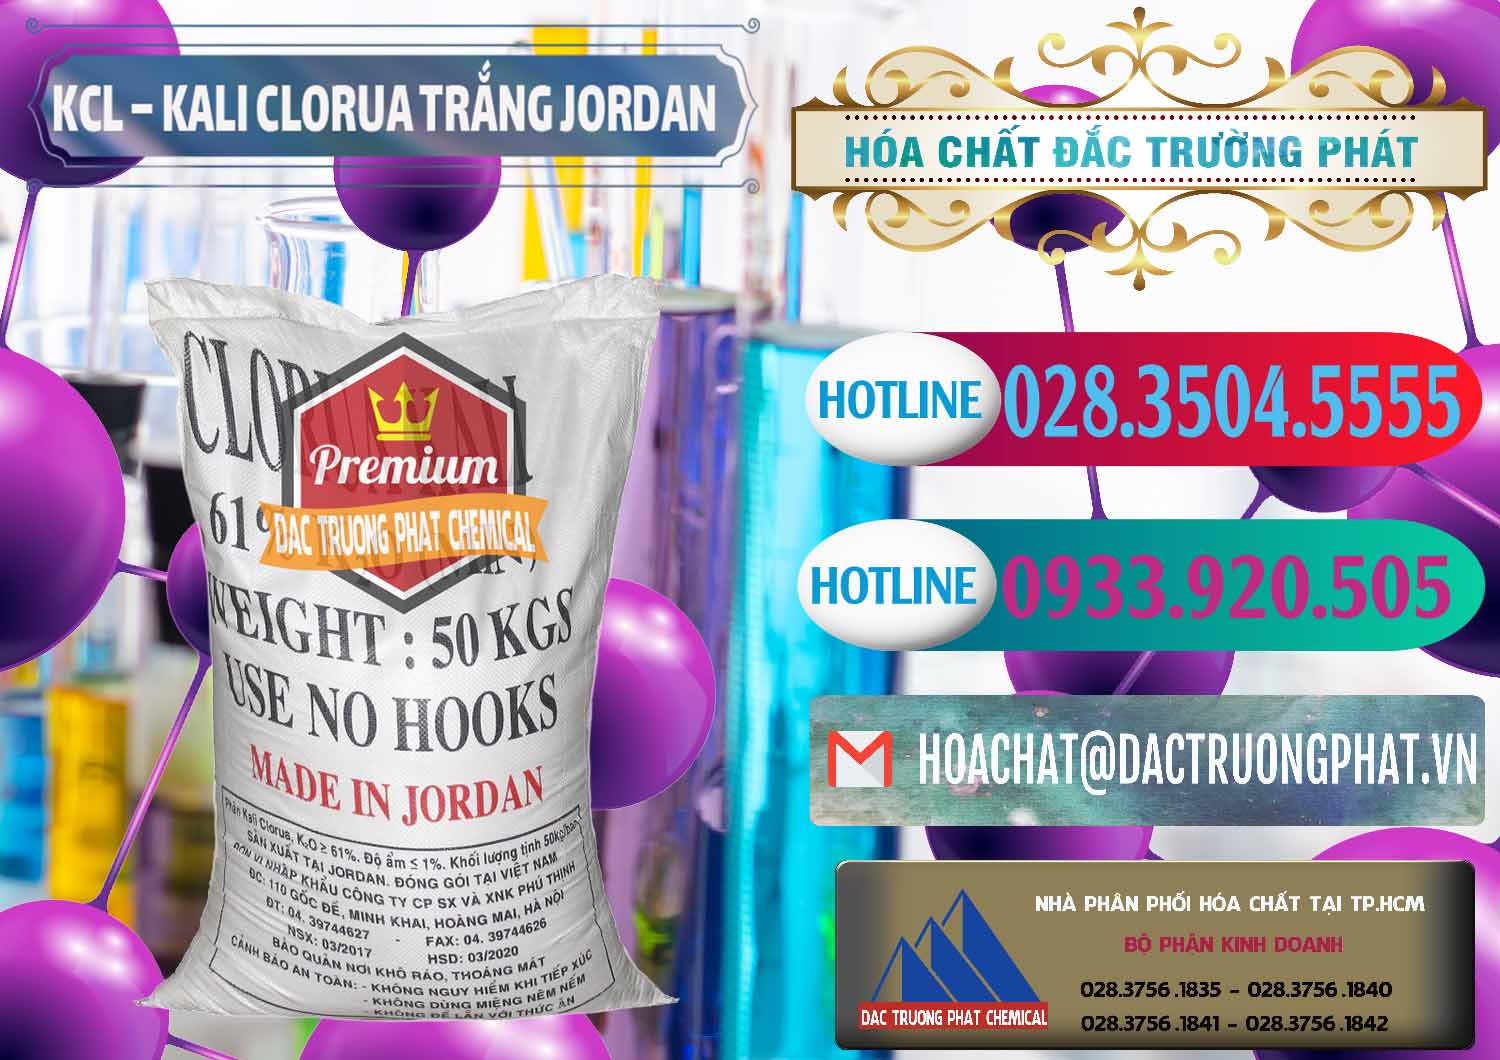 Cty chuyên bán và cung cấp KCL – Kali Clorua Trắng Jordan - 0088 - Cty phân phối và cung ứng hóa chất tại TP.HCM - truongphat.vn